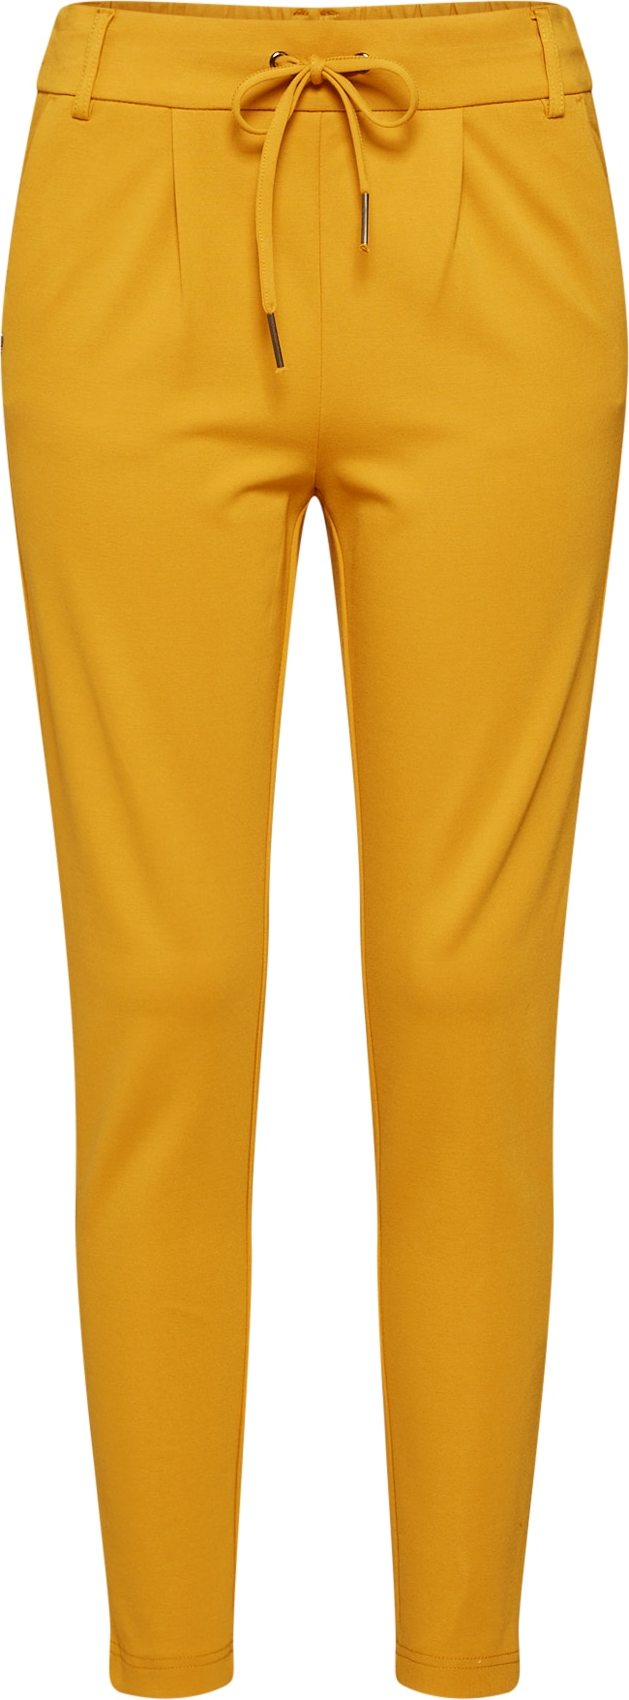 Kalhoty se sklady v pase 'Poptrash' Only žlutá